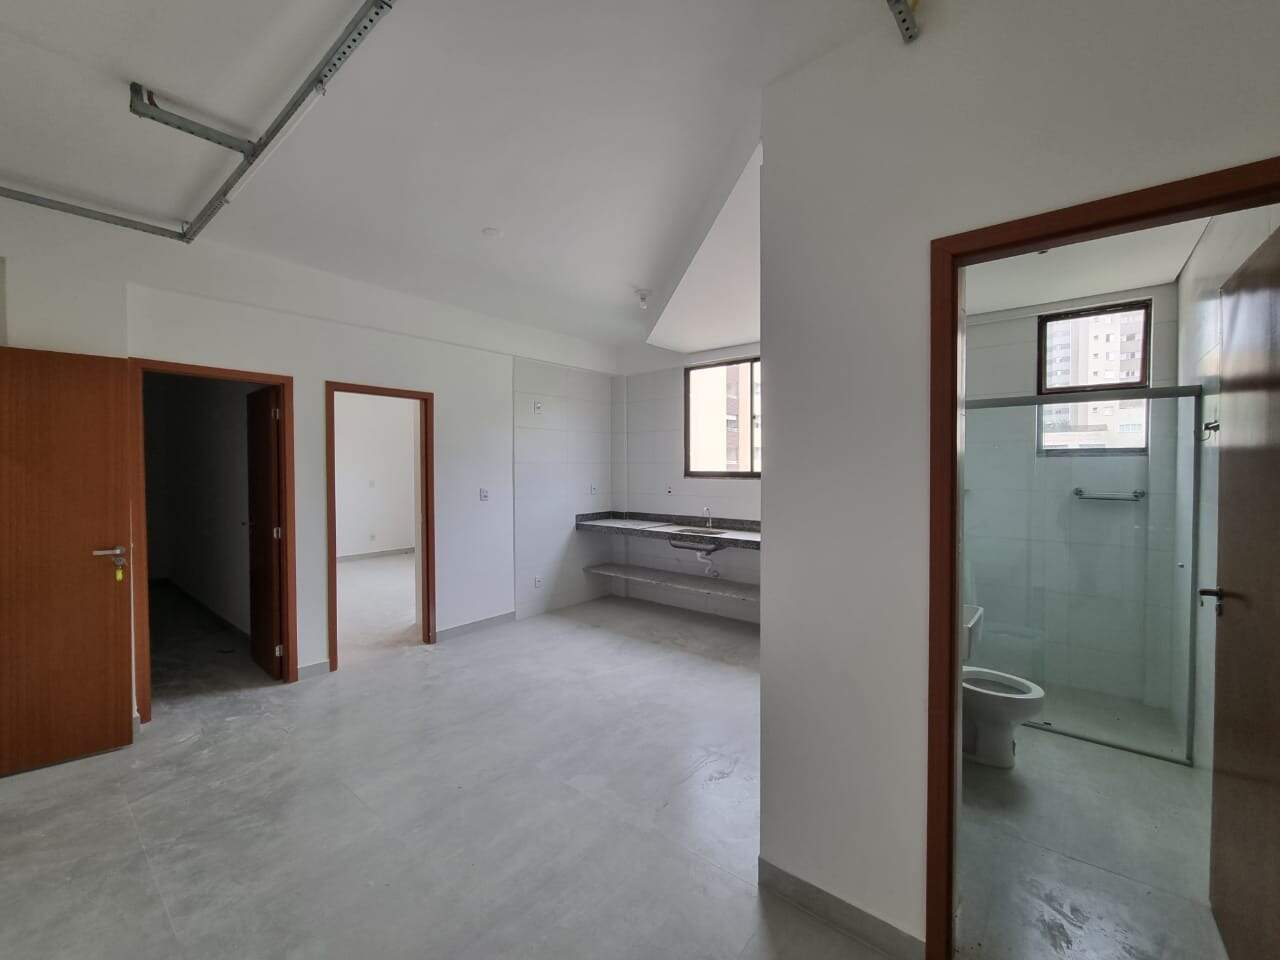 Imagem do imóvel Apartamento para aluguel, 2 quartos, 1 vaga, Buritis - Belo Horizonte/MG